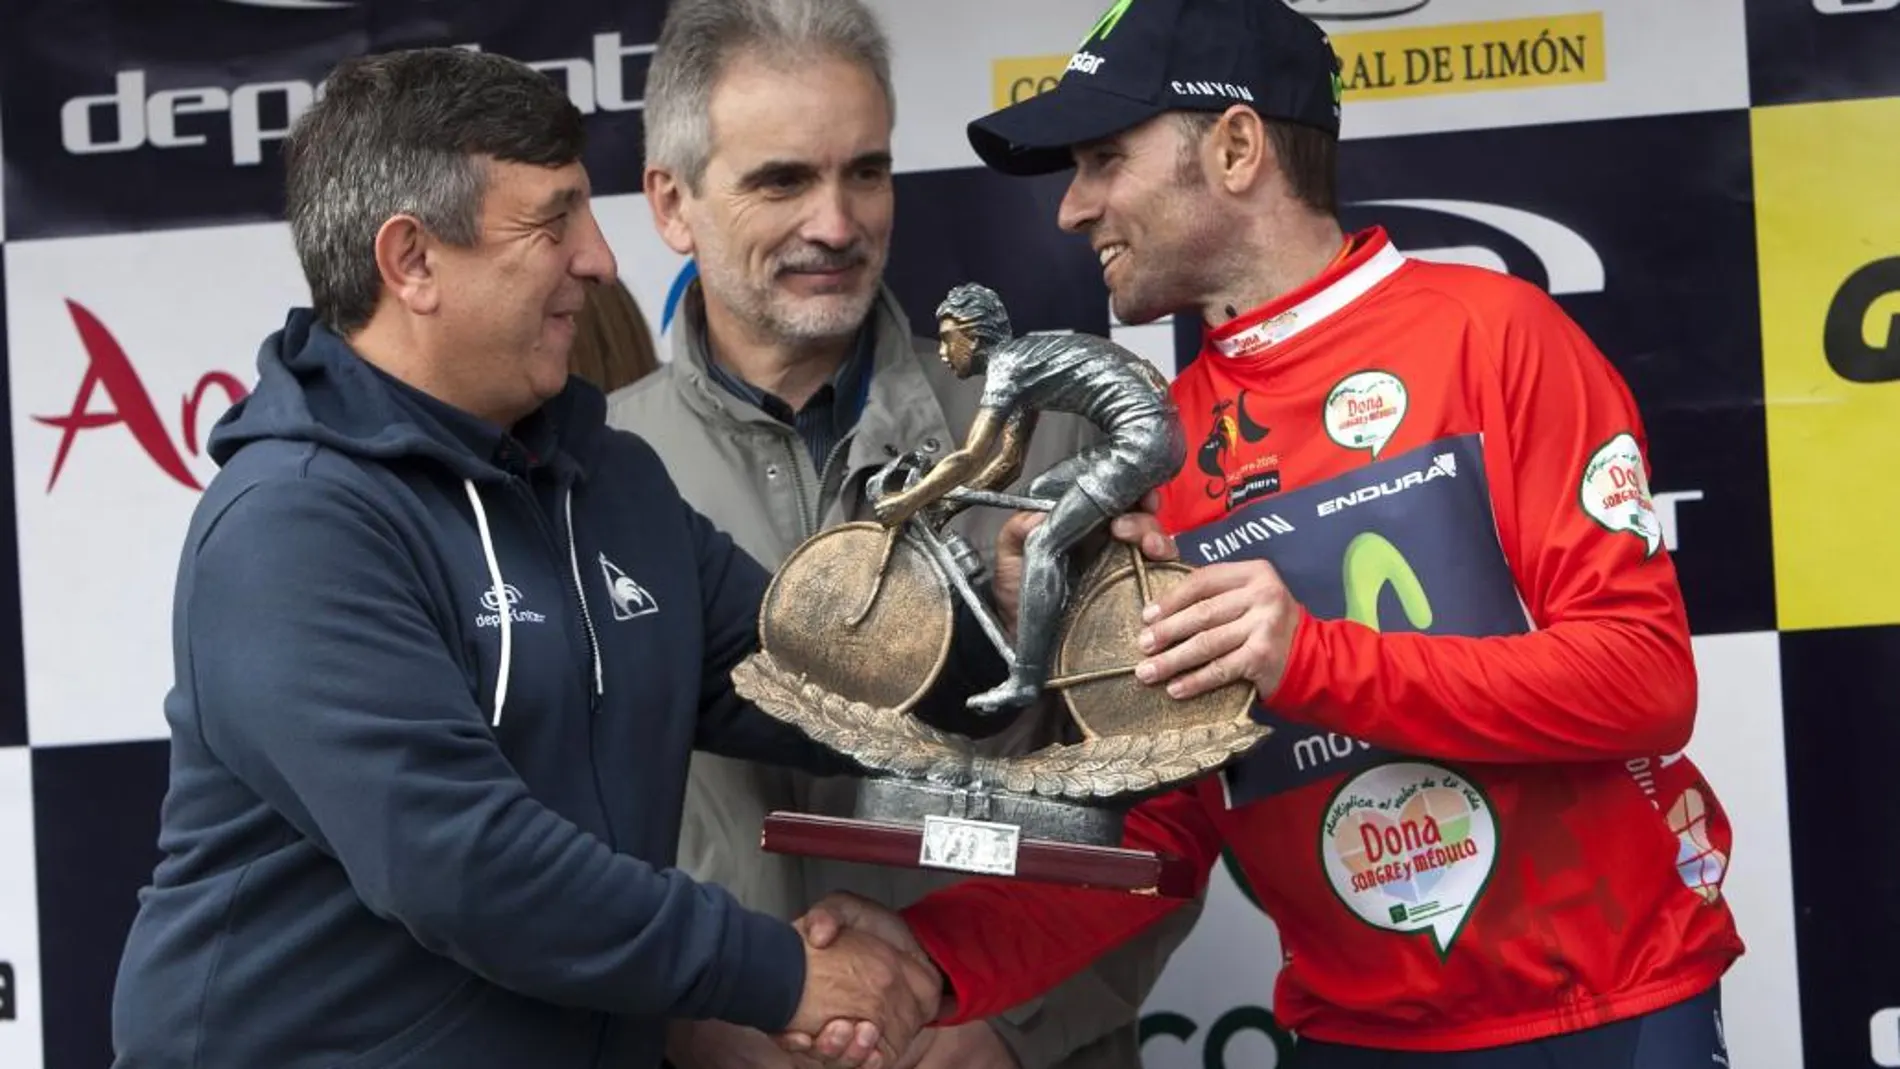 El ciclista español Alejandro Valverde (Movistar) (d) con el maillot de líder recibe el trofeo que le acredita vencedor de la 62 edición de la Vuelta Ciclista a Andalucía tras la quinta y última etapa disputada hoy entre San Roque (Cádiz) y Estepona (Málaga)